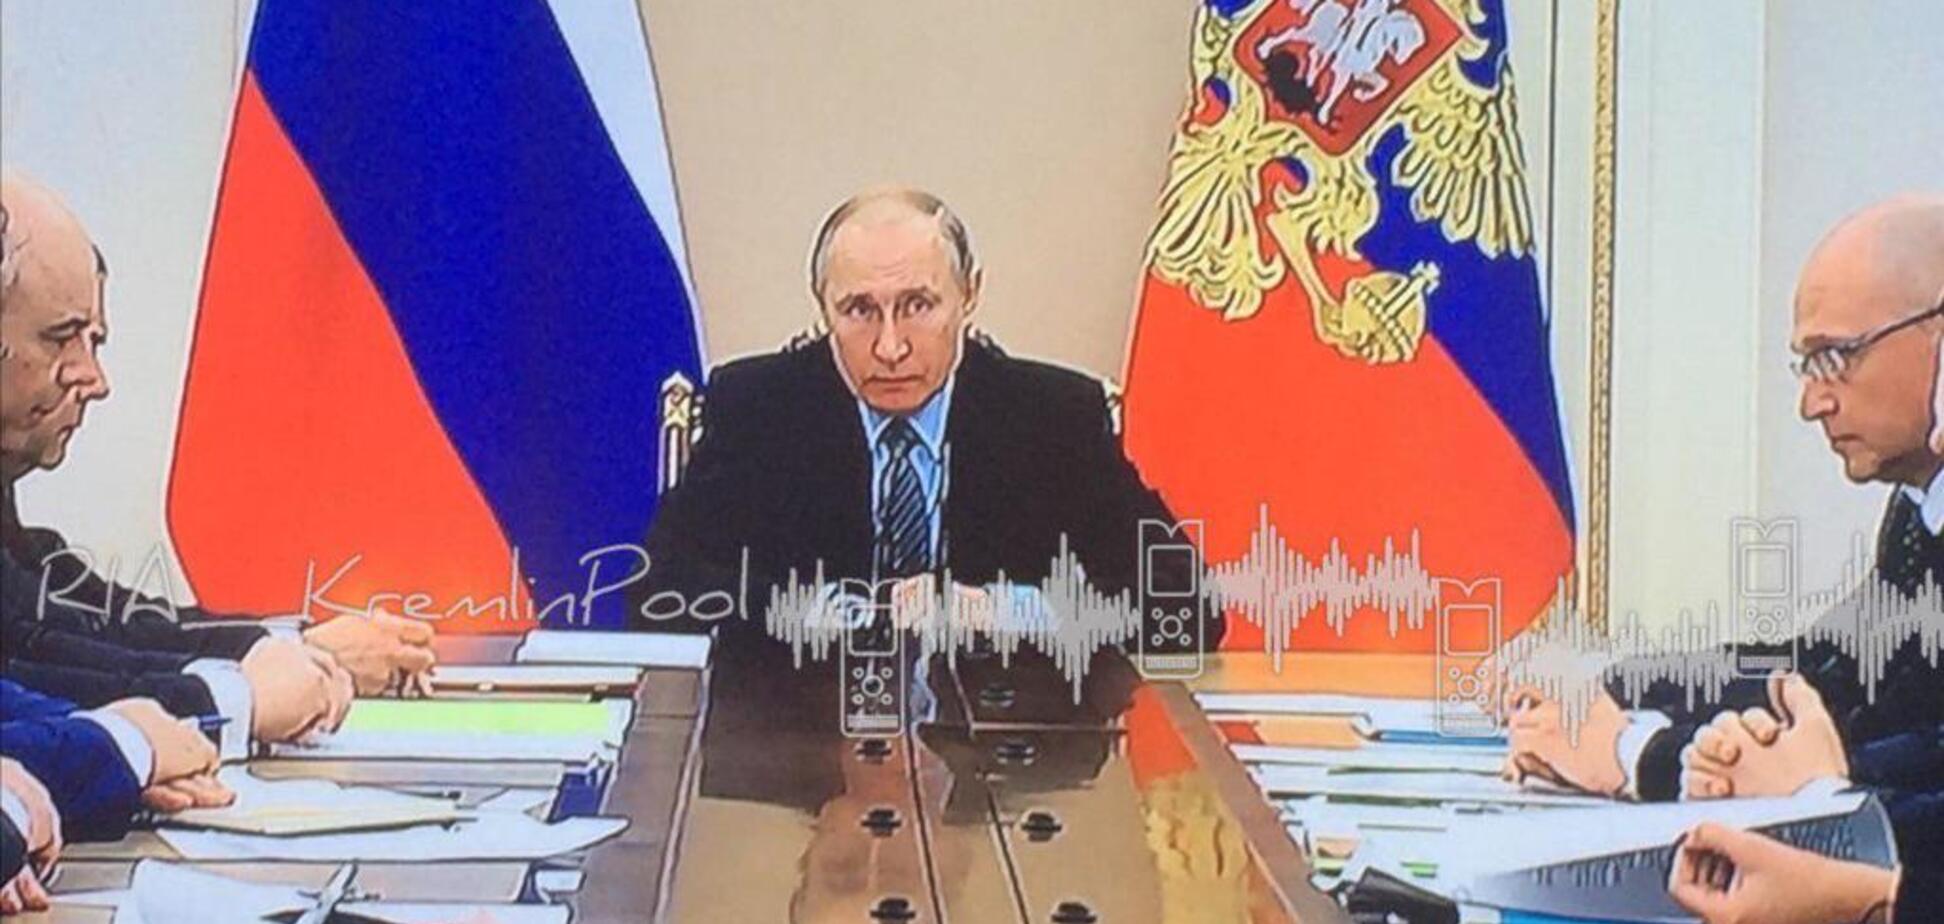 'Не обошло стороной': Путин заболел, в России обеспокоены. Видеофакт